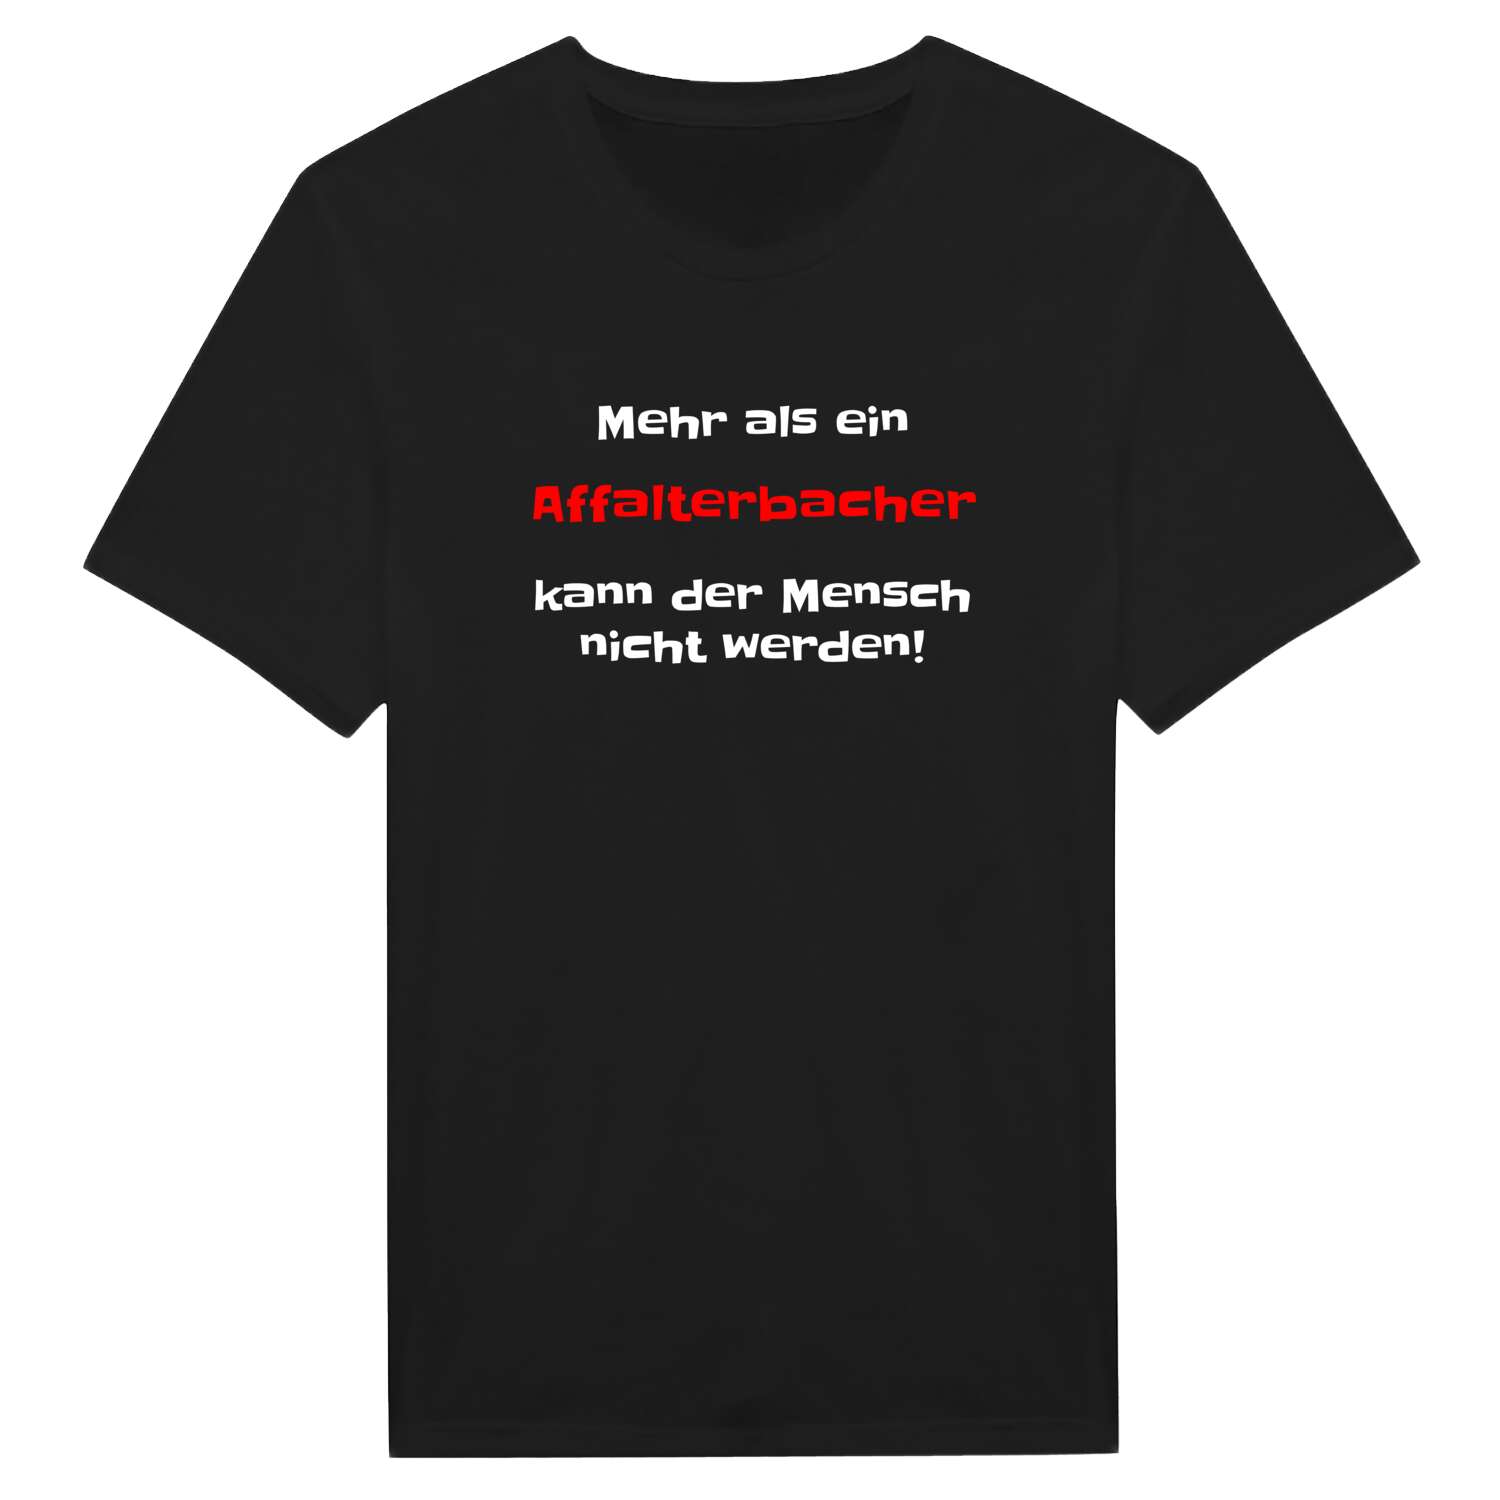 Affalterbach T-Shirt »Mehr als ein«